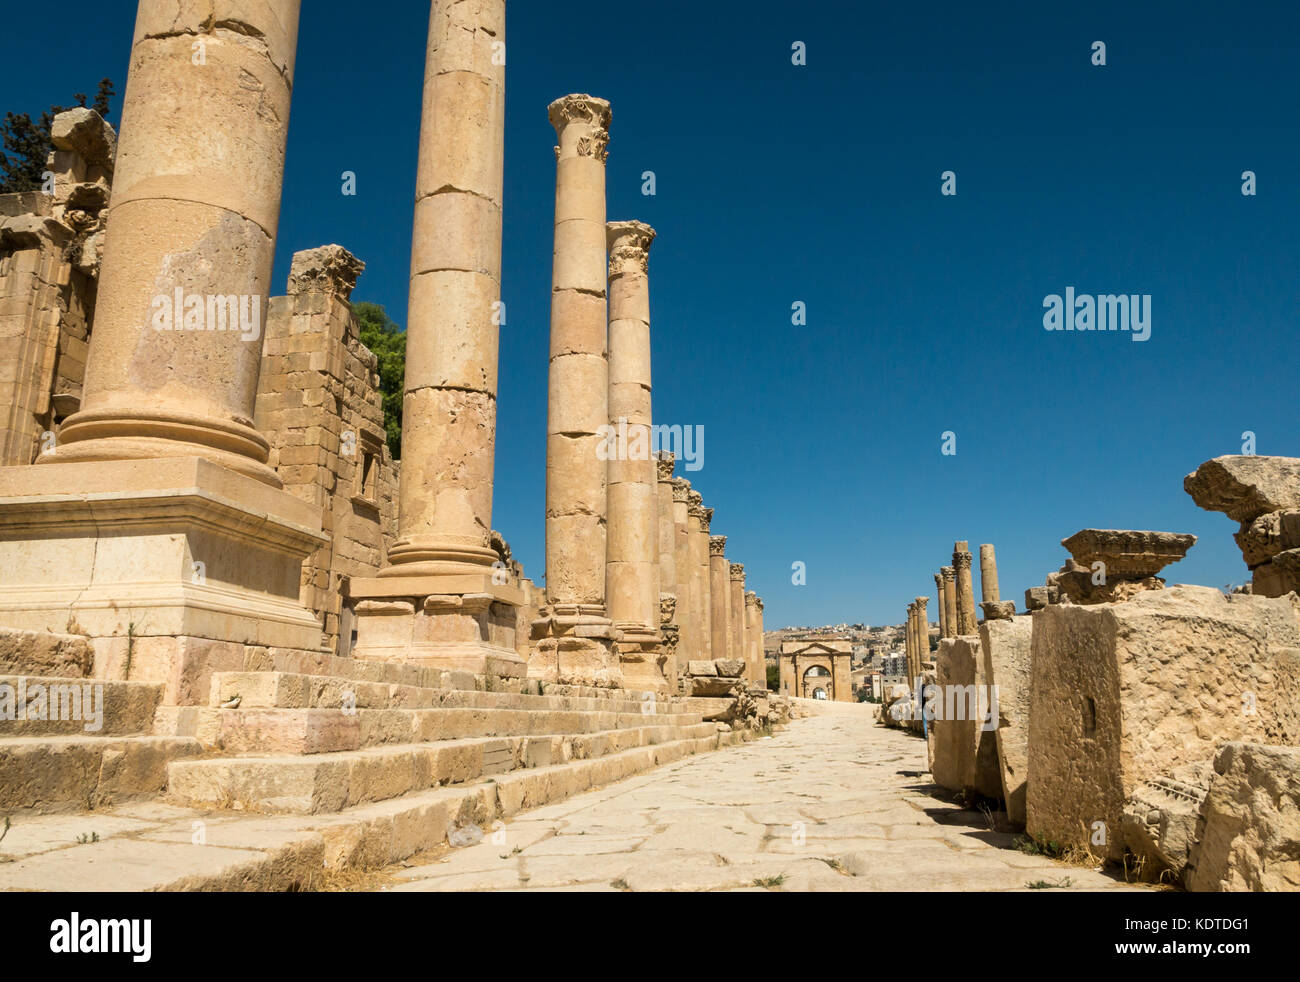 Vista del Cardo pavimentata con colonne corinzie a nord di Porta Romana, rovina della città di Jerash, antica Gerasa, sito archeologico in Giordania, Medio Oriente Foto Stock